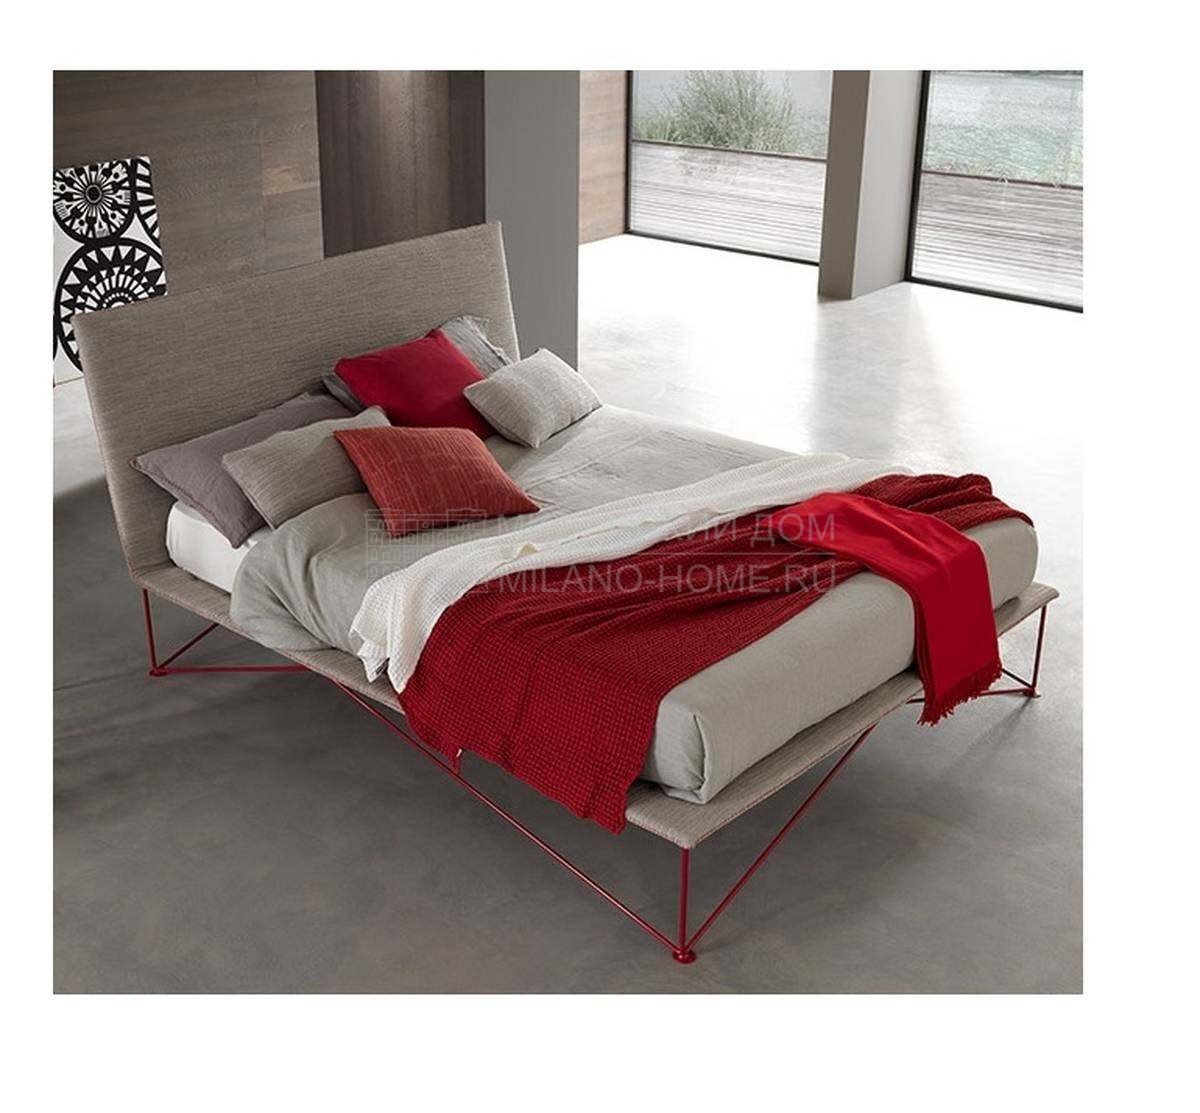 Двуспальная кровать Tulip Double из Италии фабрики BOLZAN